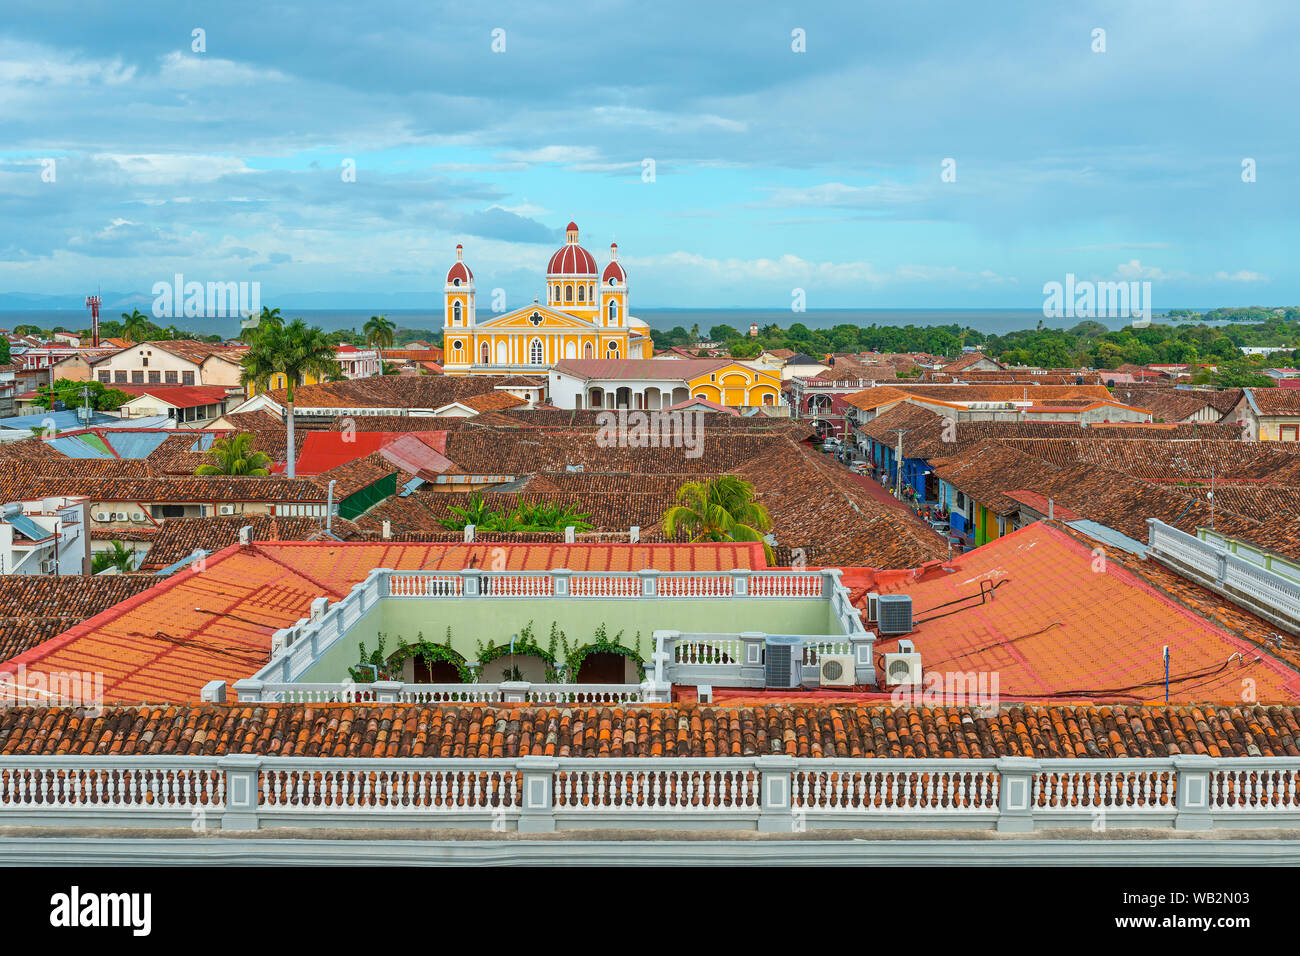 Stadtbild von der Stadt Granada mit seinen bunten gelbe Kathedrale, spanischen Kolonialstil Architektur und den Nicaragua See im Hintergrund, Nicaragua. Stockfoto